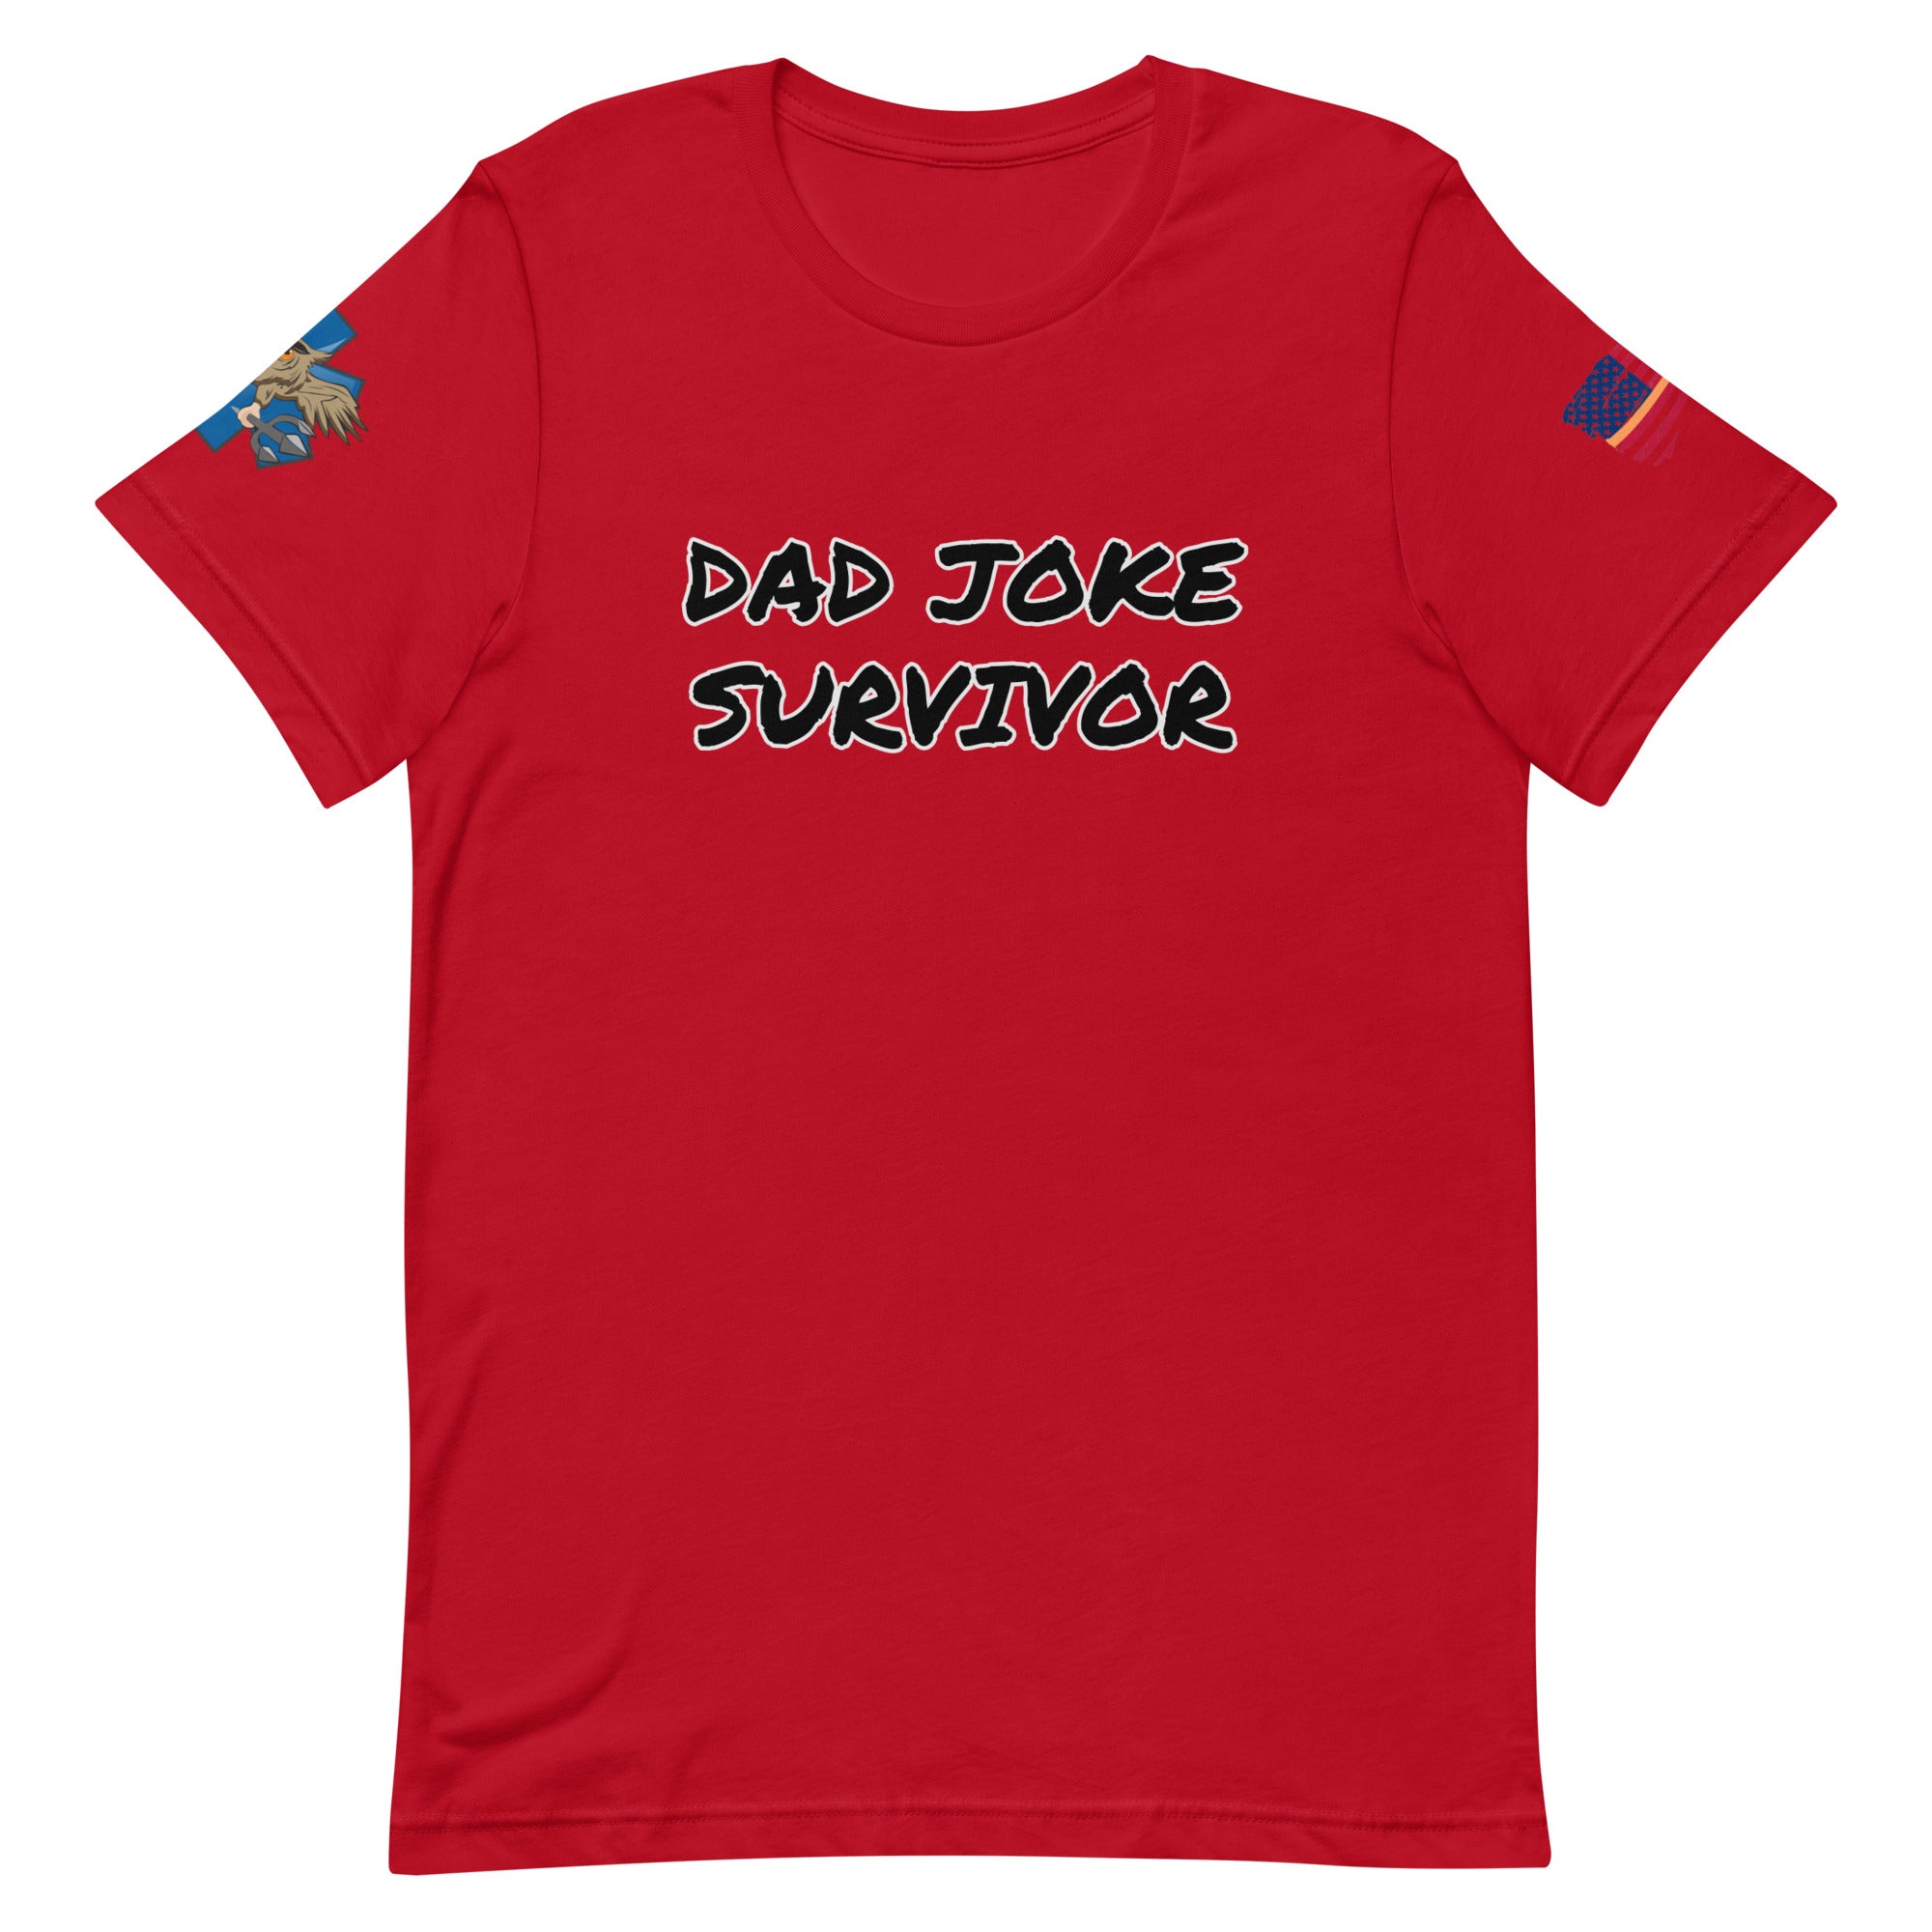 'Dad Joke Survivor' t-shirt